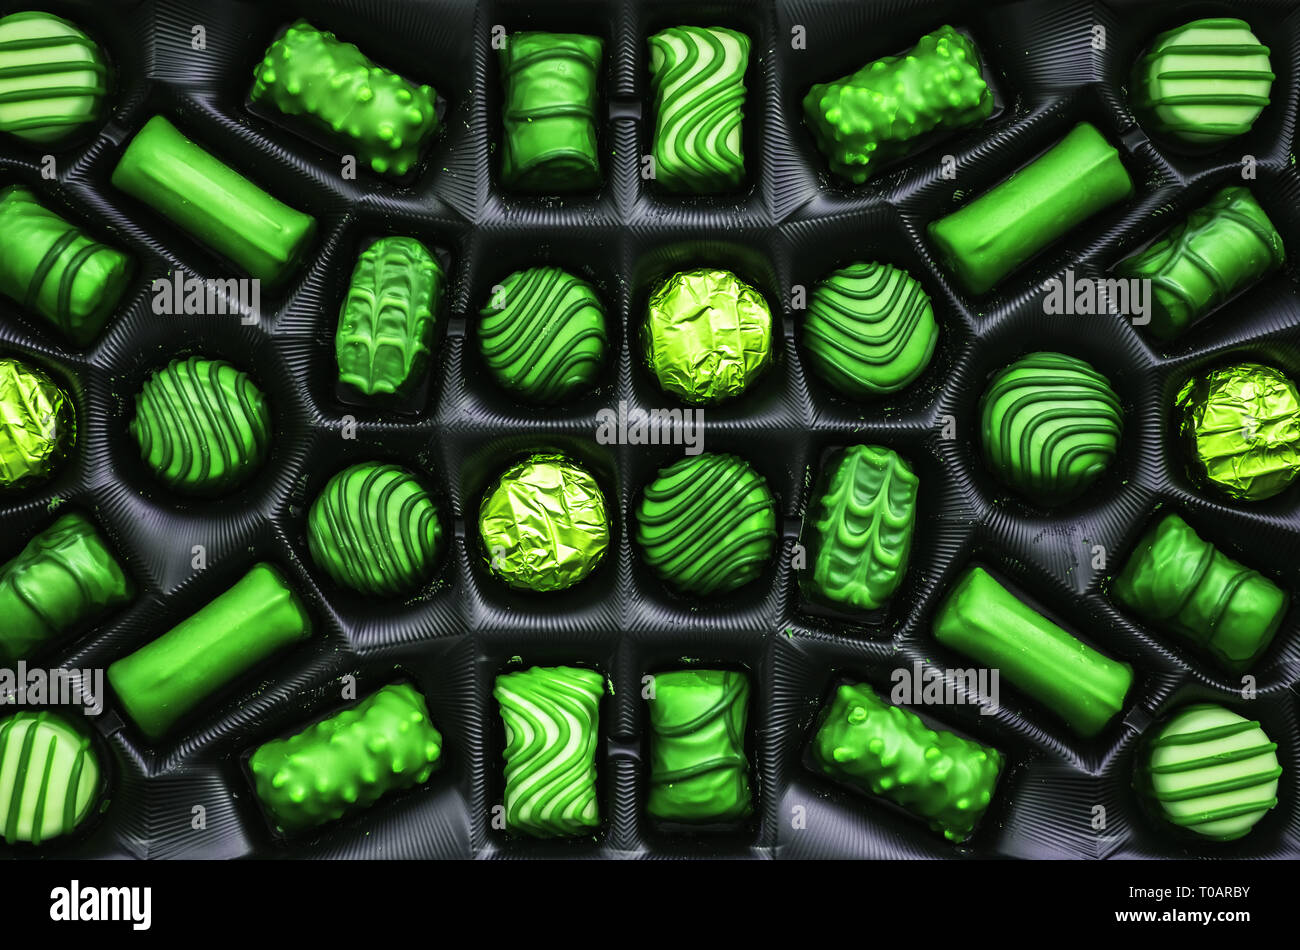 Grüne Schokolade Bonbons in der Box, Ansicht von oben Stockfotografie -  Alamy